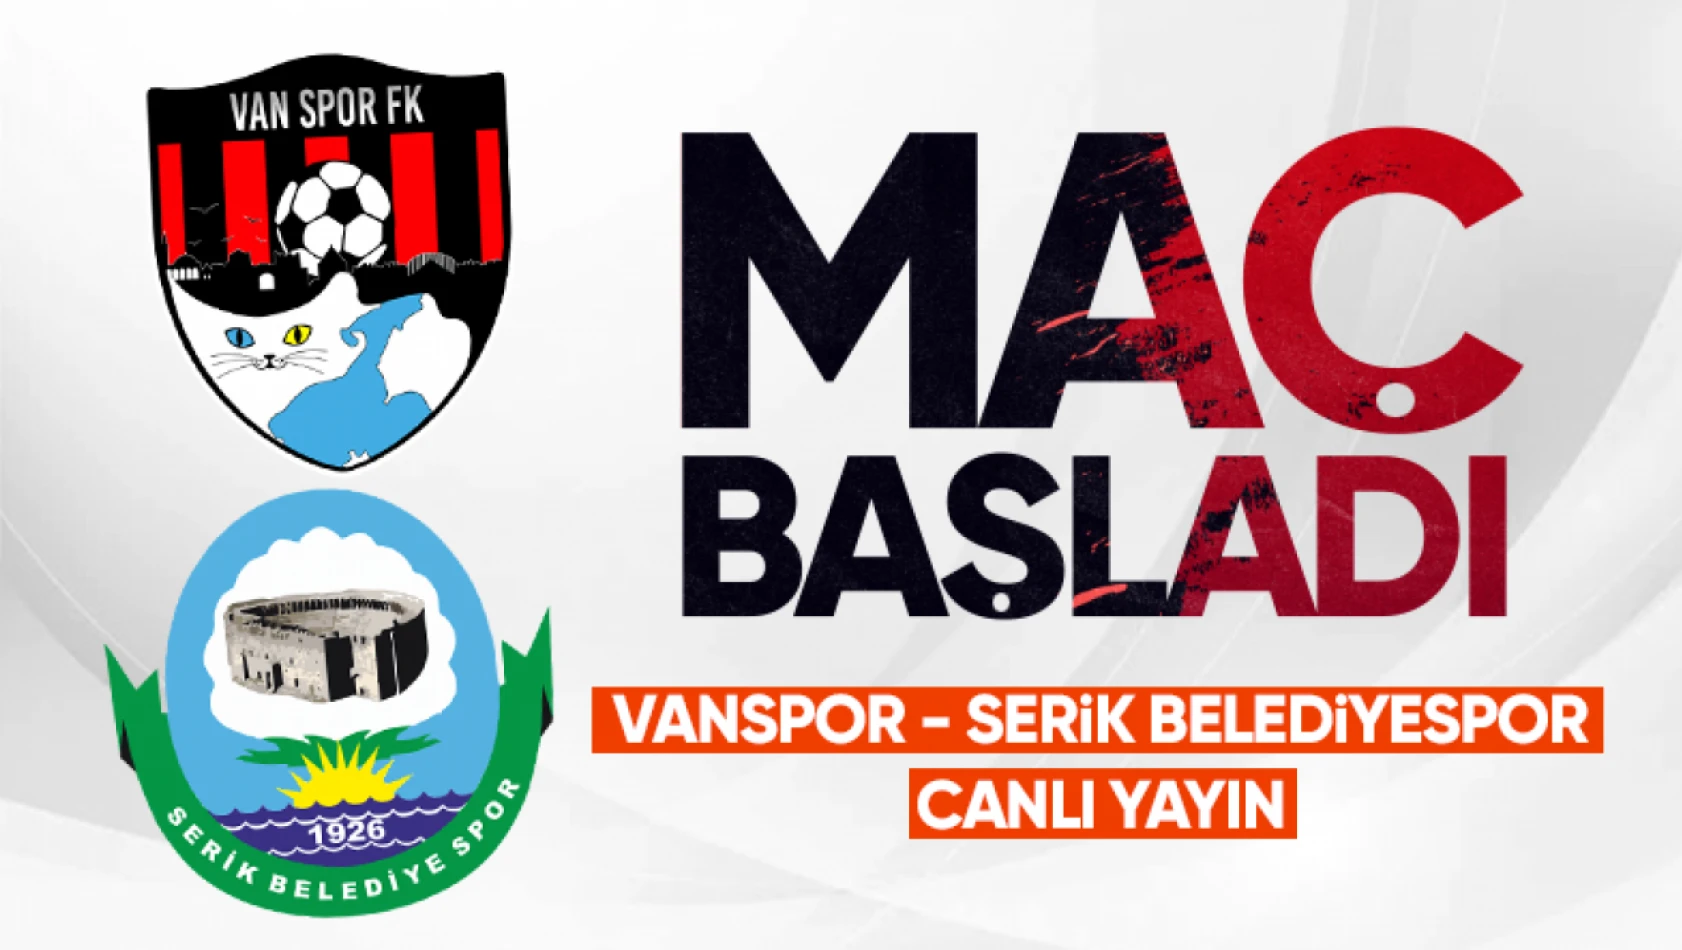 CANLI | Vanspor - Serik Belediyespor canlı izle...